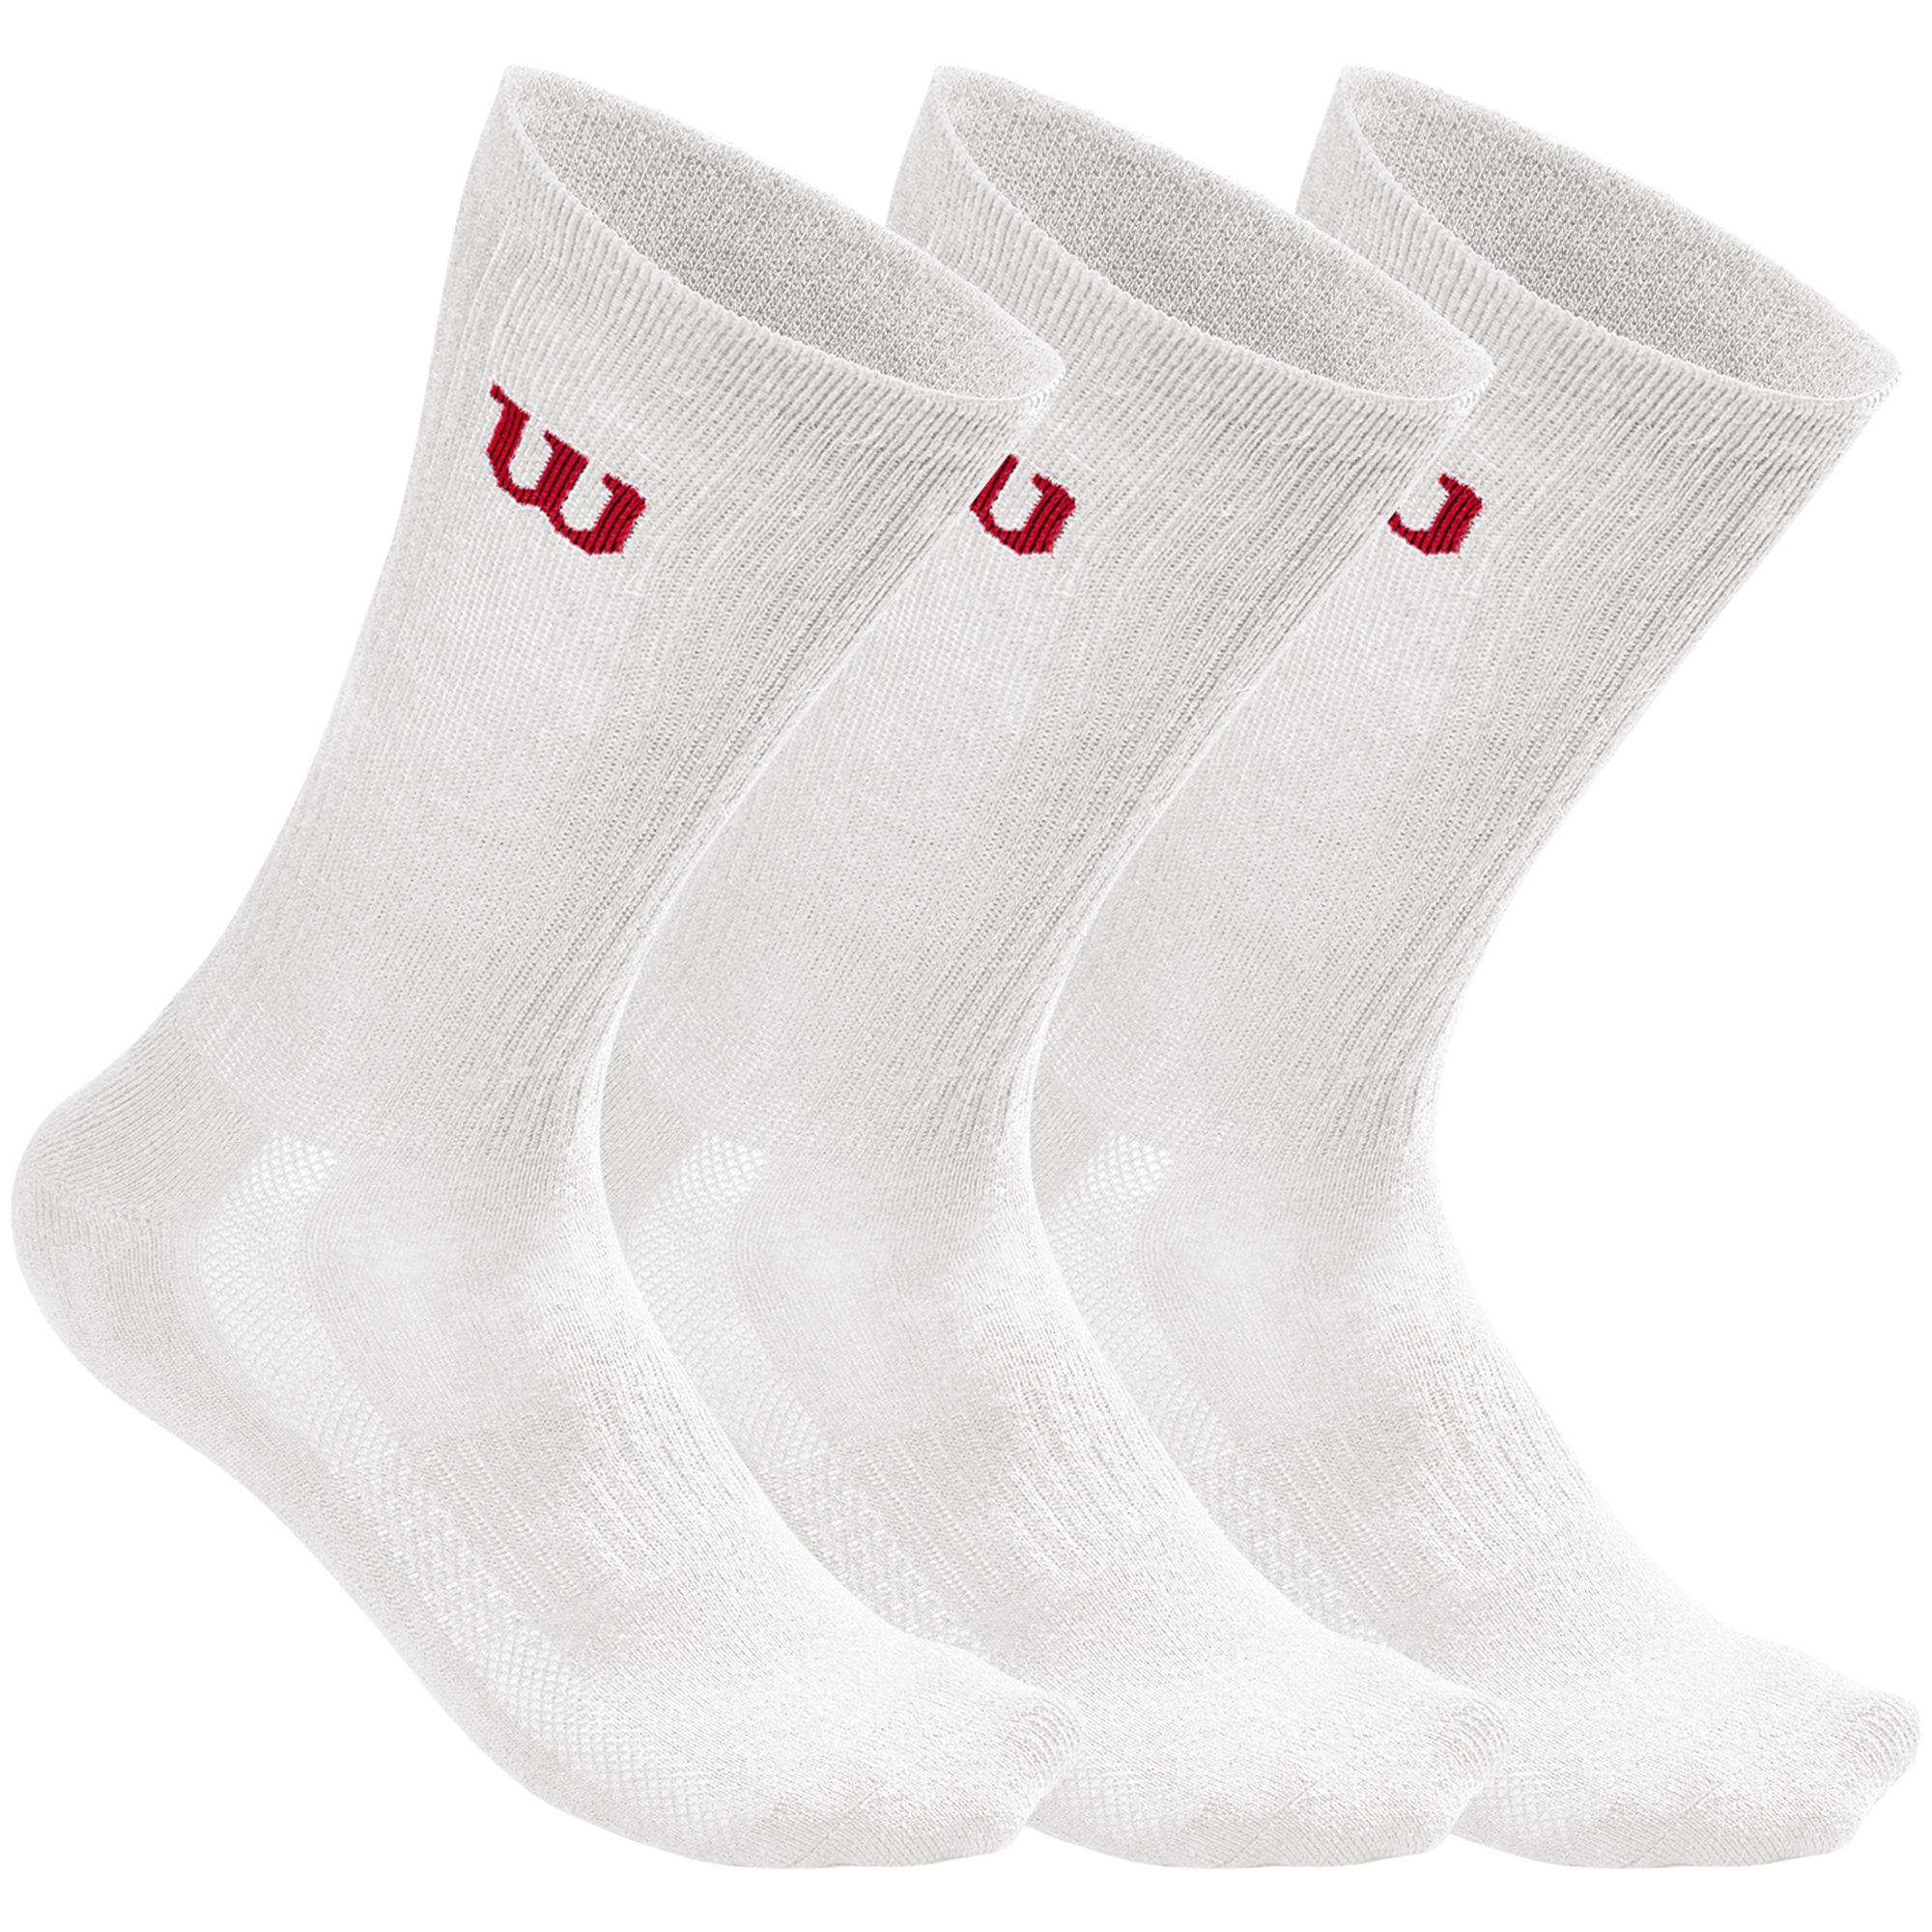 Wilson Crew Socks (3 Pairs) - White/Red - Tennisnuts.com